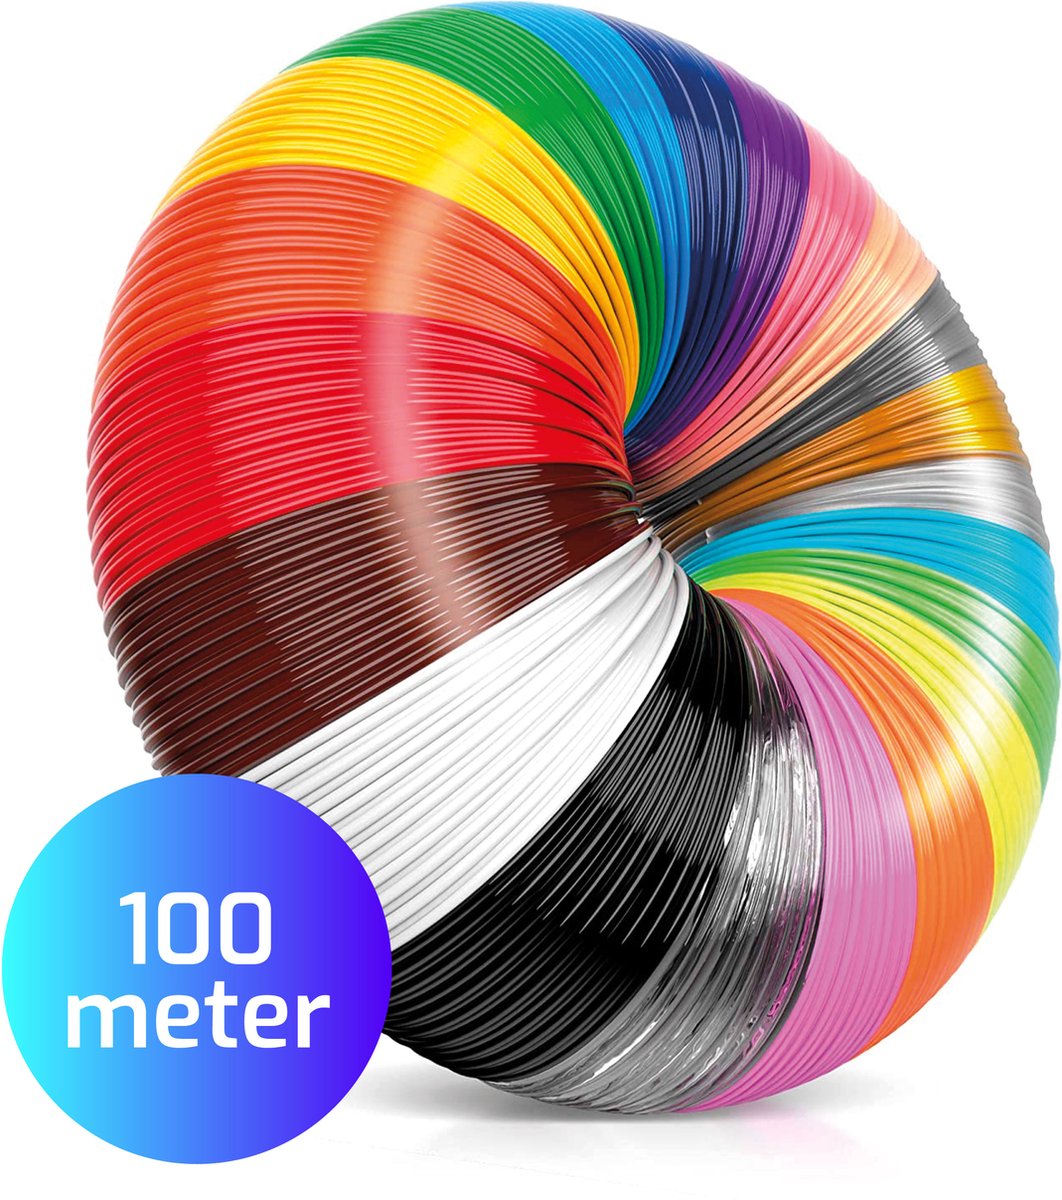 Filament PLA 1,75 mm - 20 couleurs 100 mètres - Filament stylo 3D -  Recharges stylo 3D